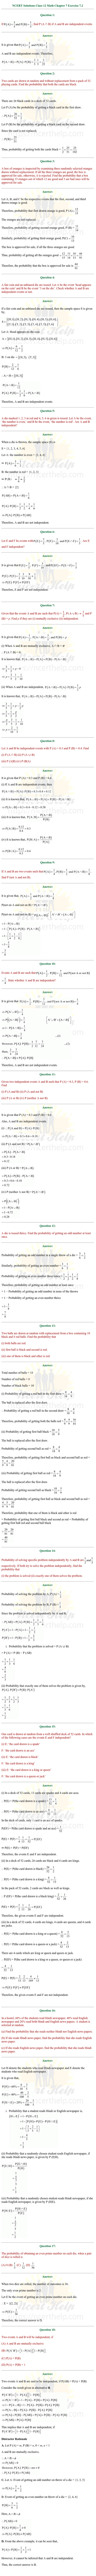 ex.13.2 Class 12 Math Chapter 13 ncert solutions